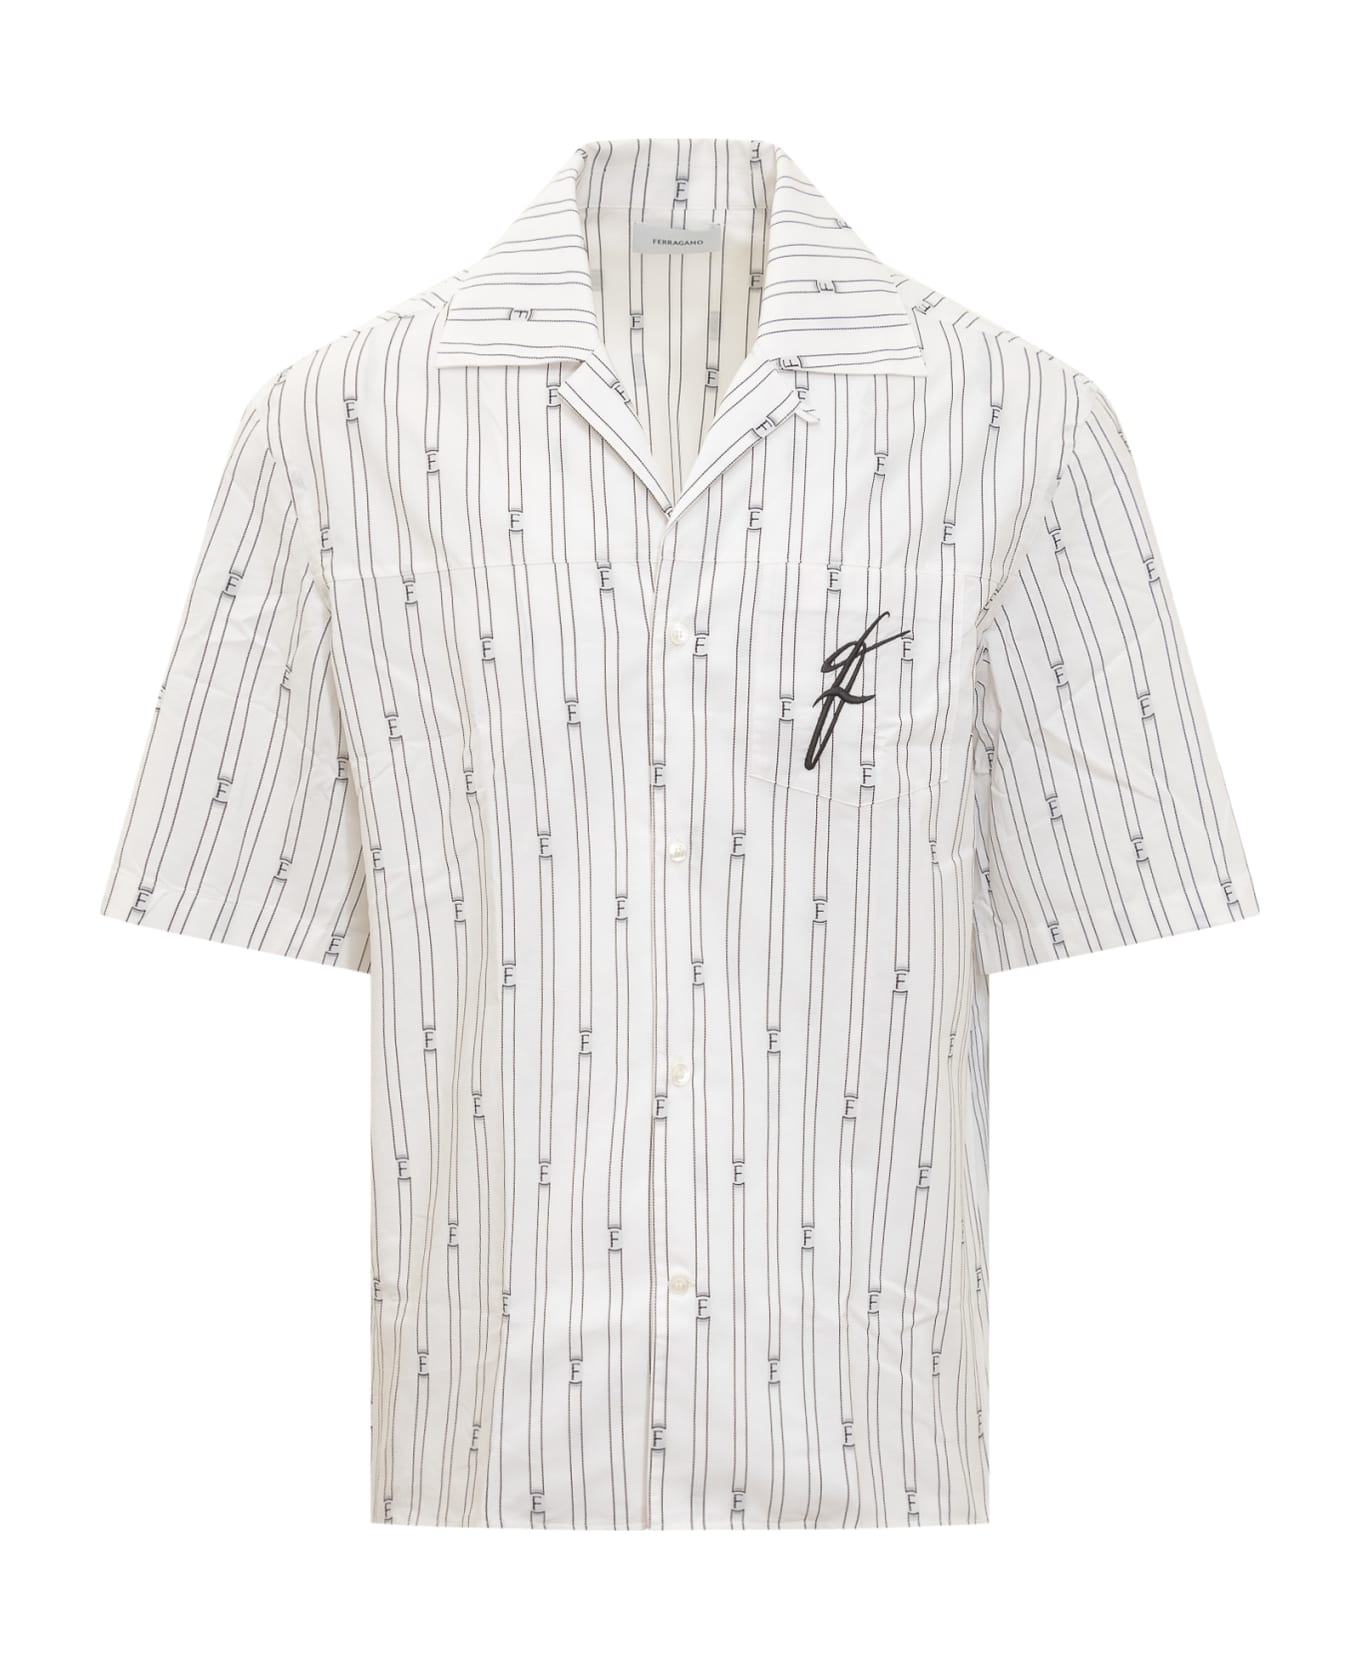 Ferragamo F Shirt - OPTIC WHITE/NERO シャツ